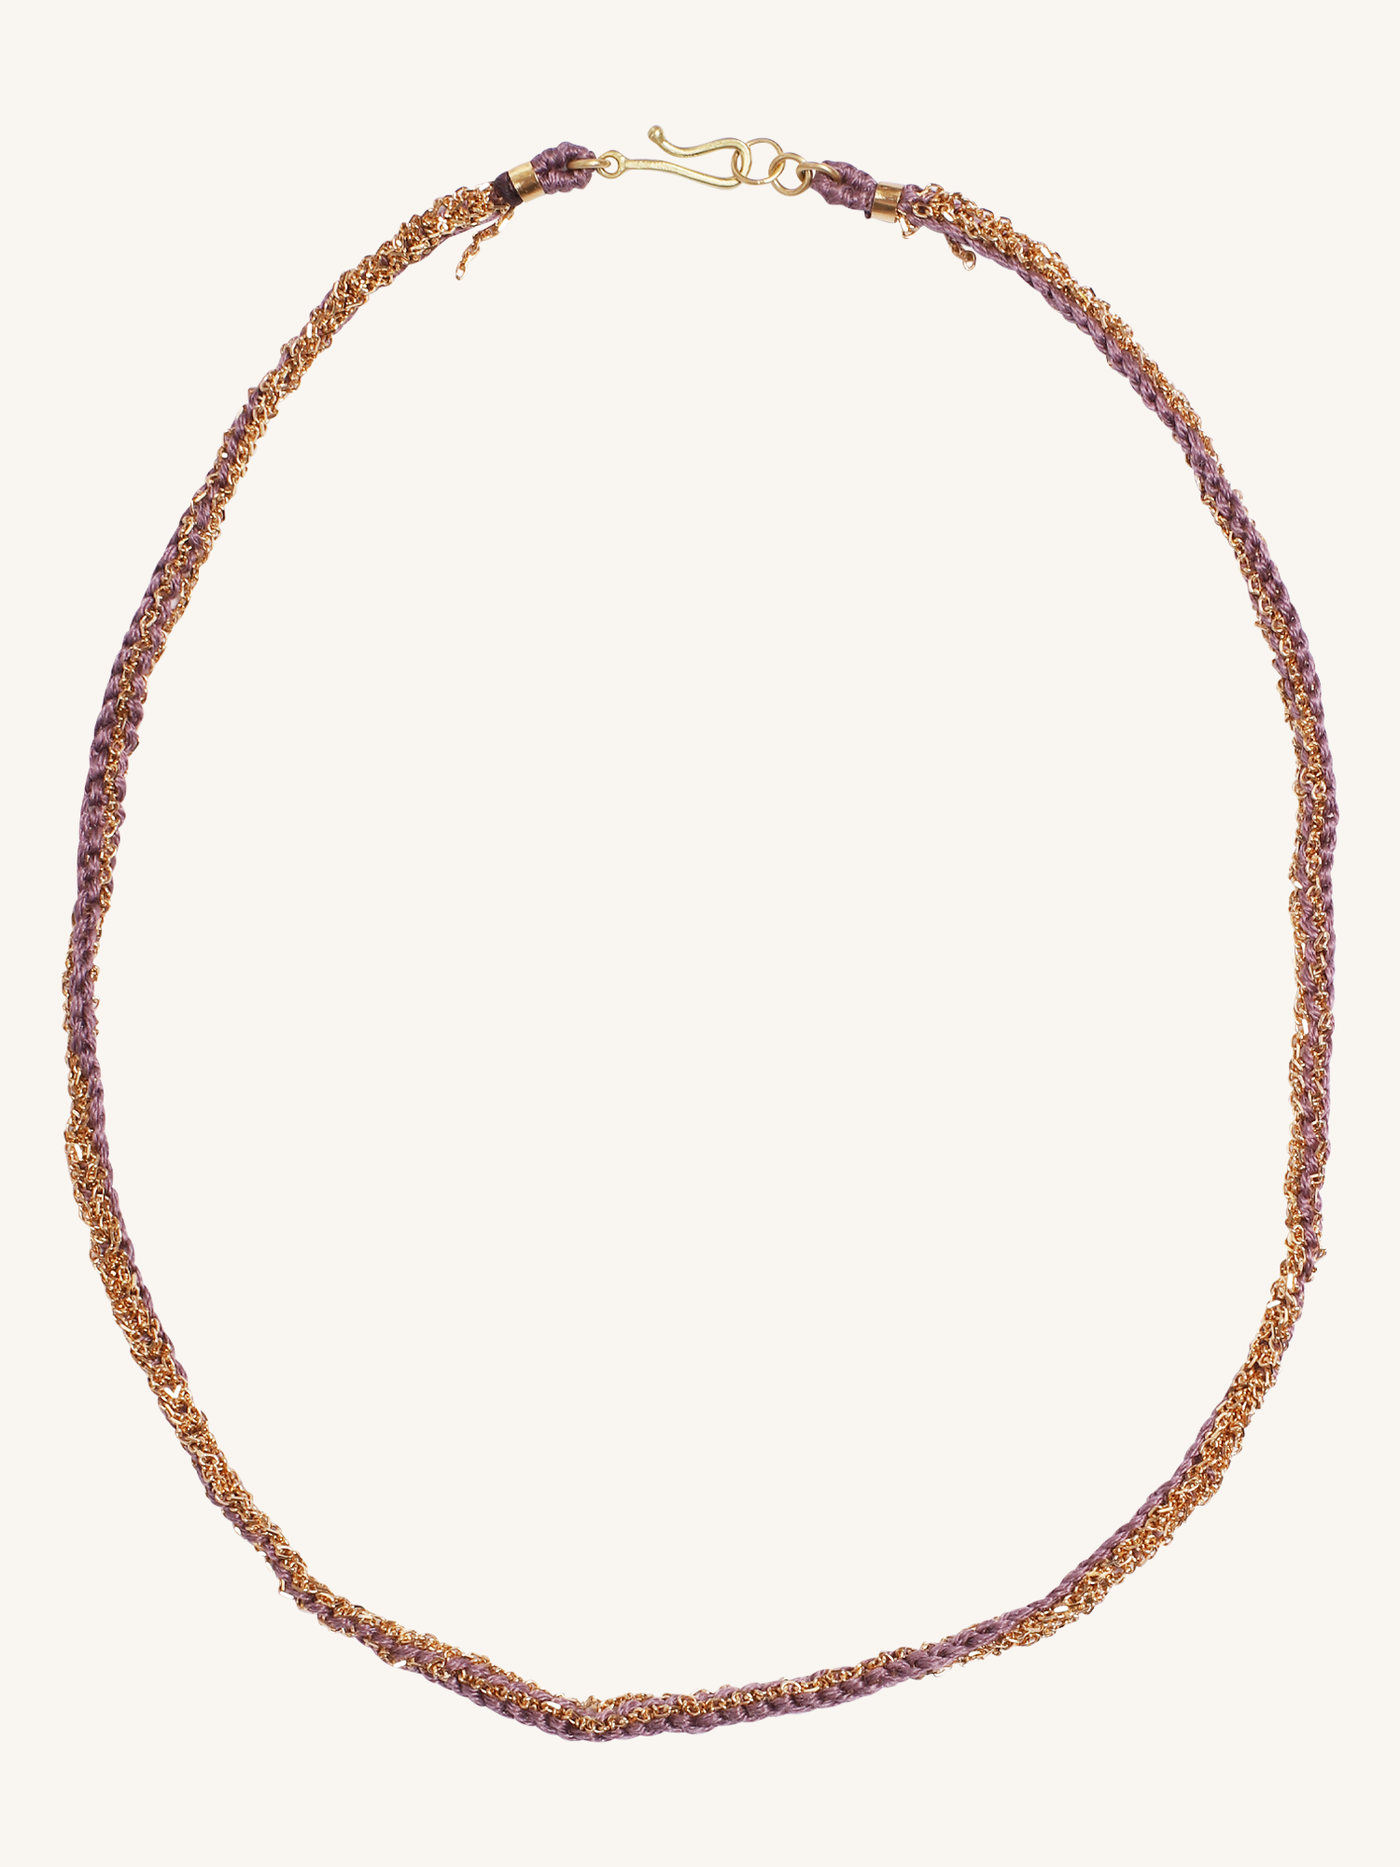 Lavender Silk & 18k Gold Necklace